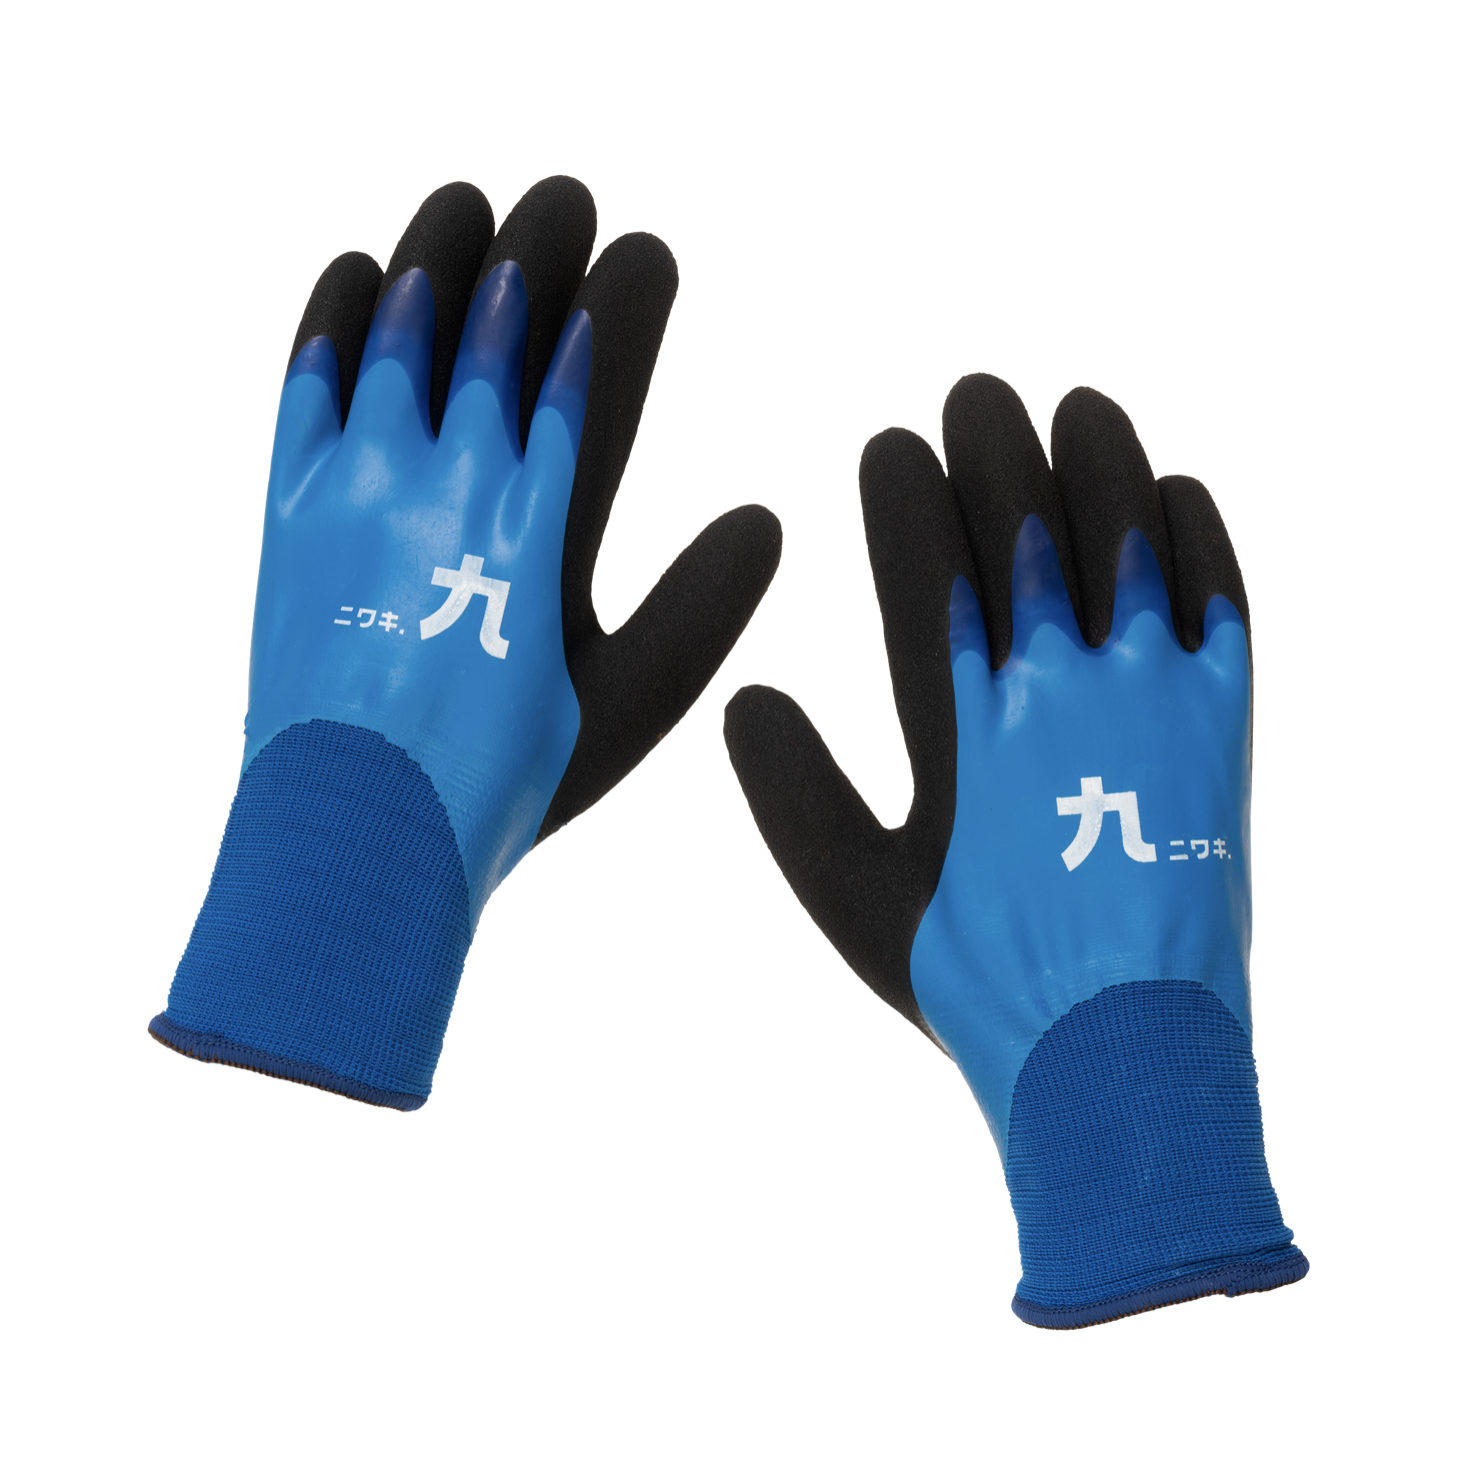 Niwaki Winter Gardening Gloves Large 9